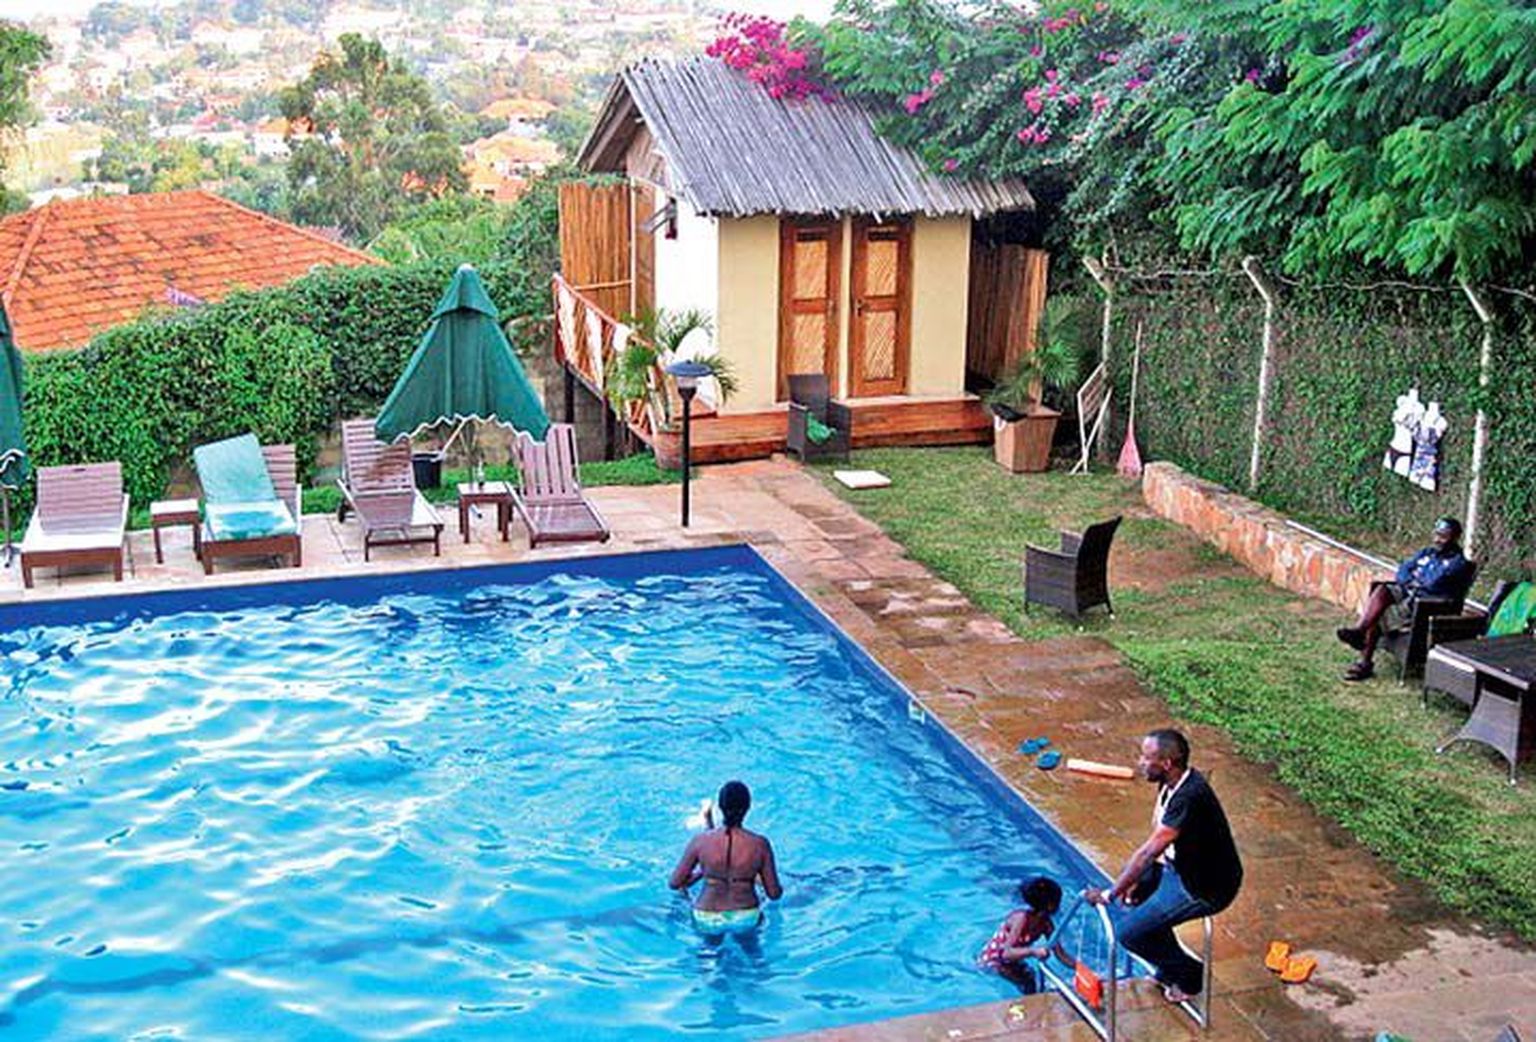 Jõukamad ugandalased käivad ujumas basseinides, pildil Cassio Lodge’i hotelli ja restorani bassein, kus igaüks saab väikse tasu eest veemõnusid nautida.